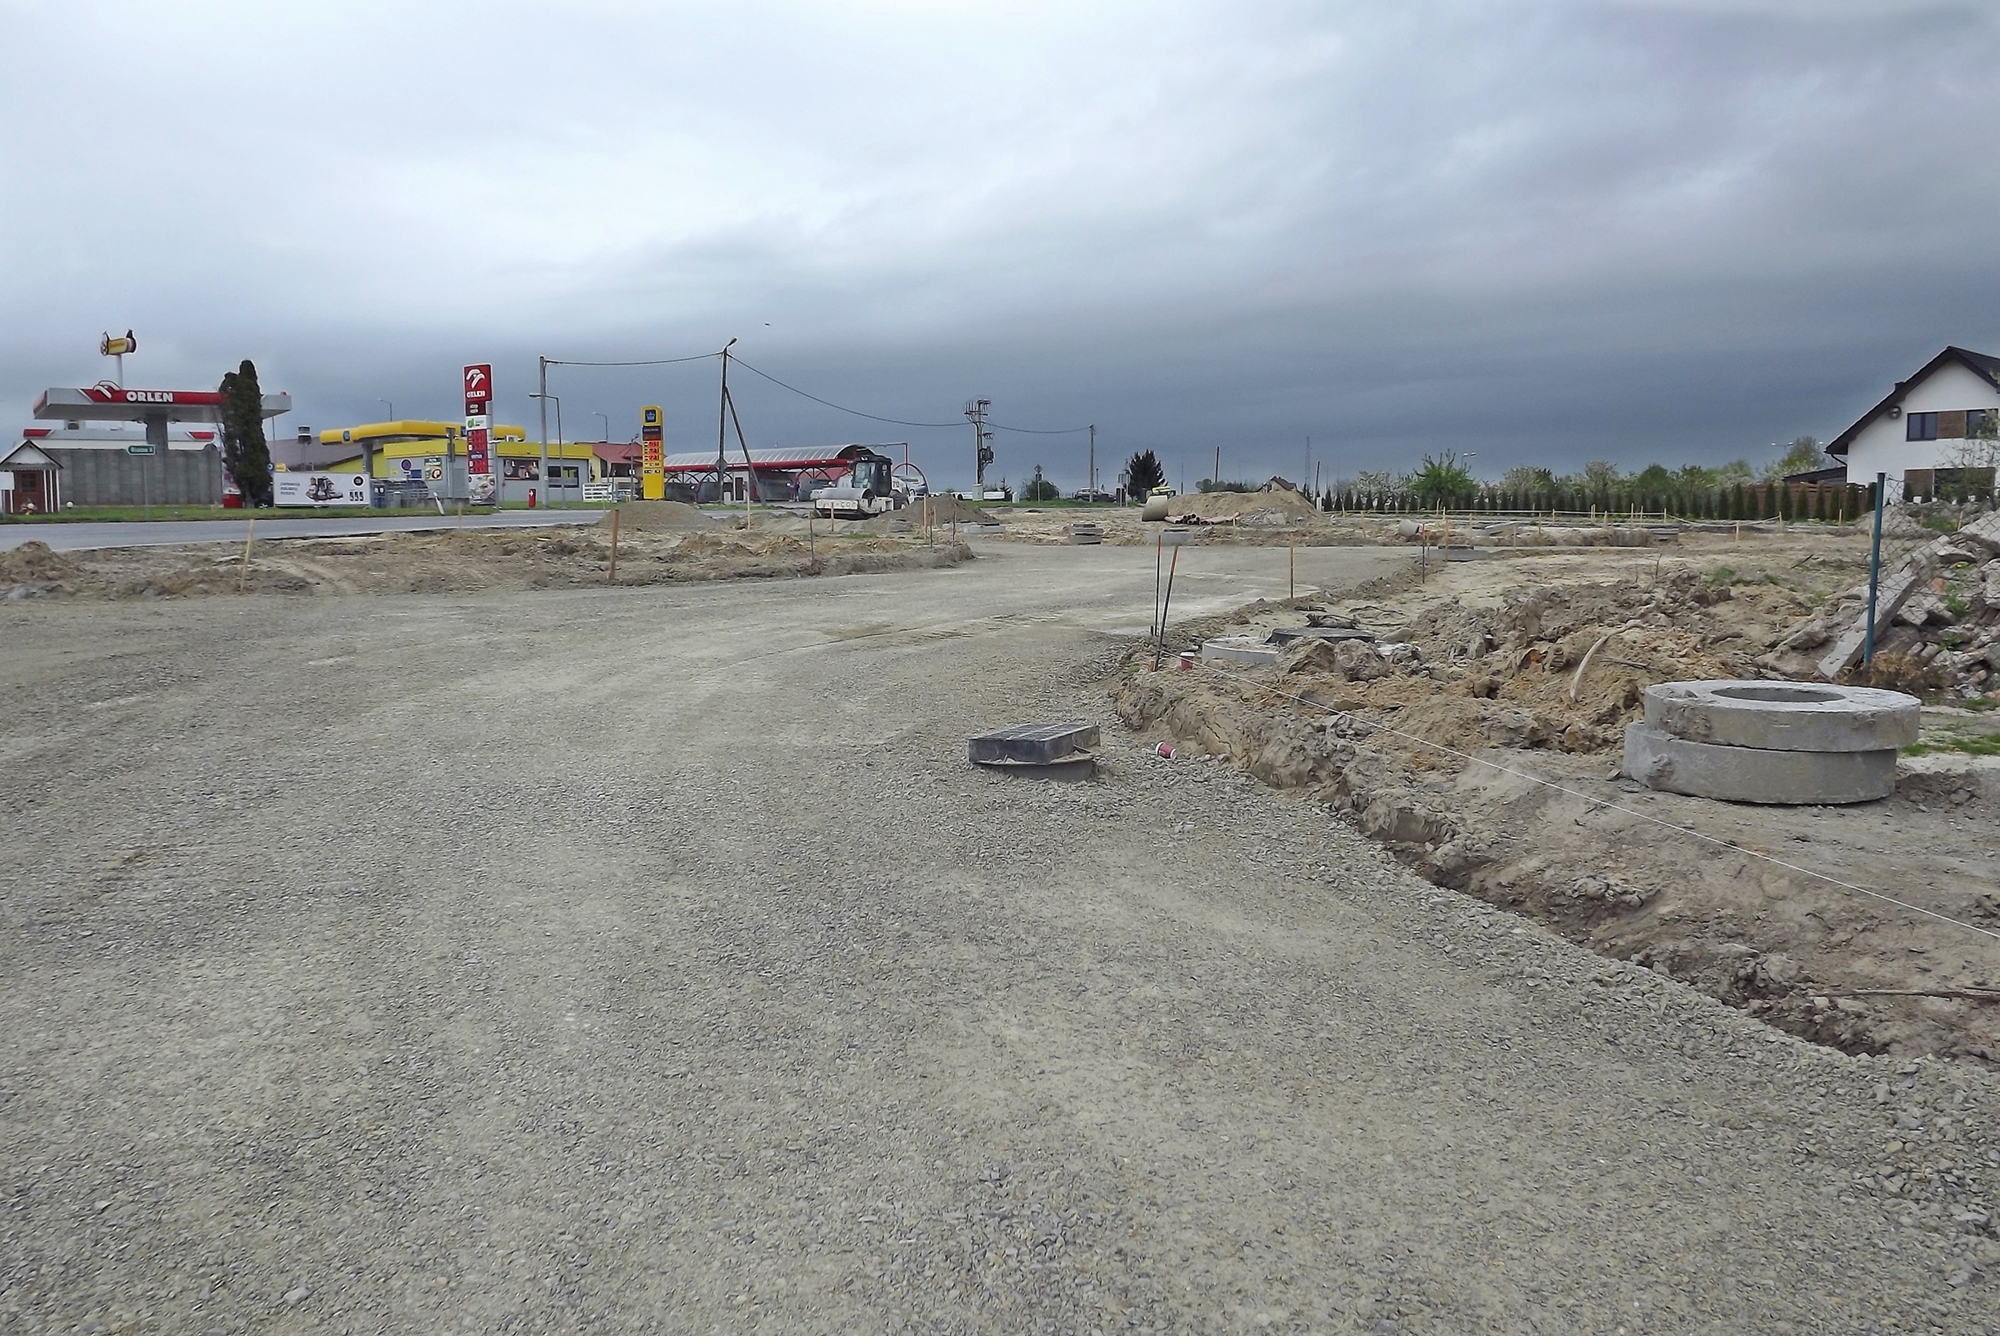 Zdjęcie przedstawia przebudowywaną drogę wojewódzką Nr 835 w Tarnogrodzie - widzimy rozpoczęte prace przy budowie ronda koło stacji paliw Orlen.